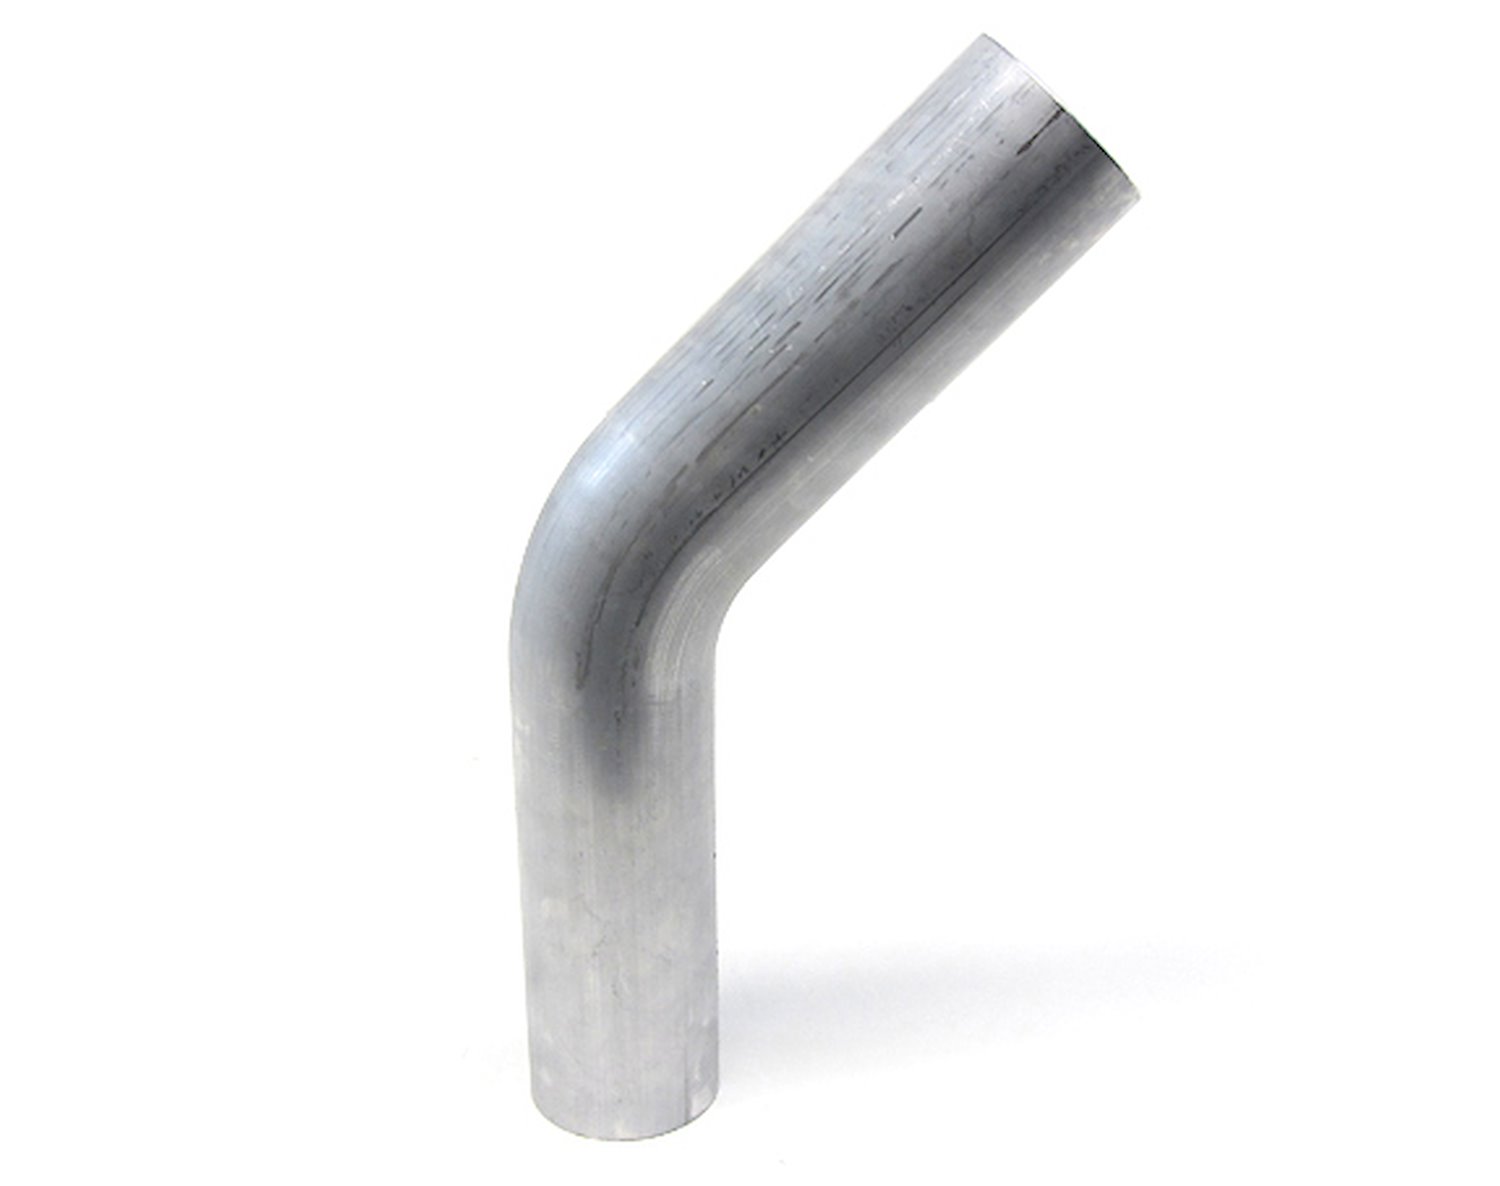 AT45-150-CLR-2 Aluminum Elbow Tube, 6061 Aluminum, 45-Degree Bend Elbow Tubing, 1-1/2 in. OD, Tight Radius, 2 in. CLR